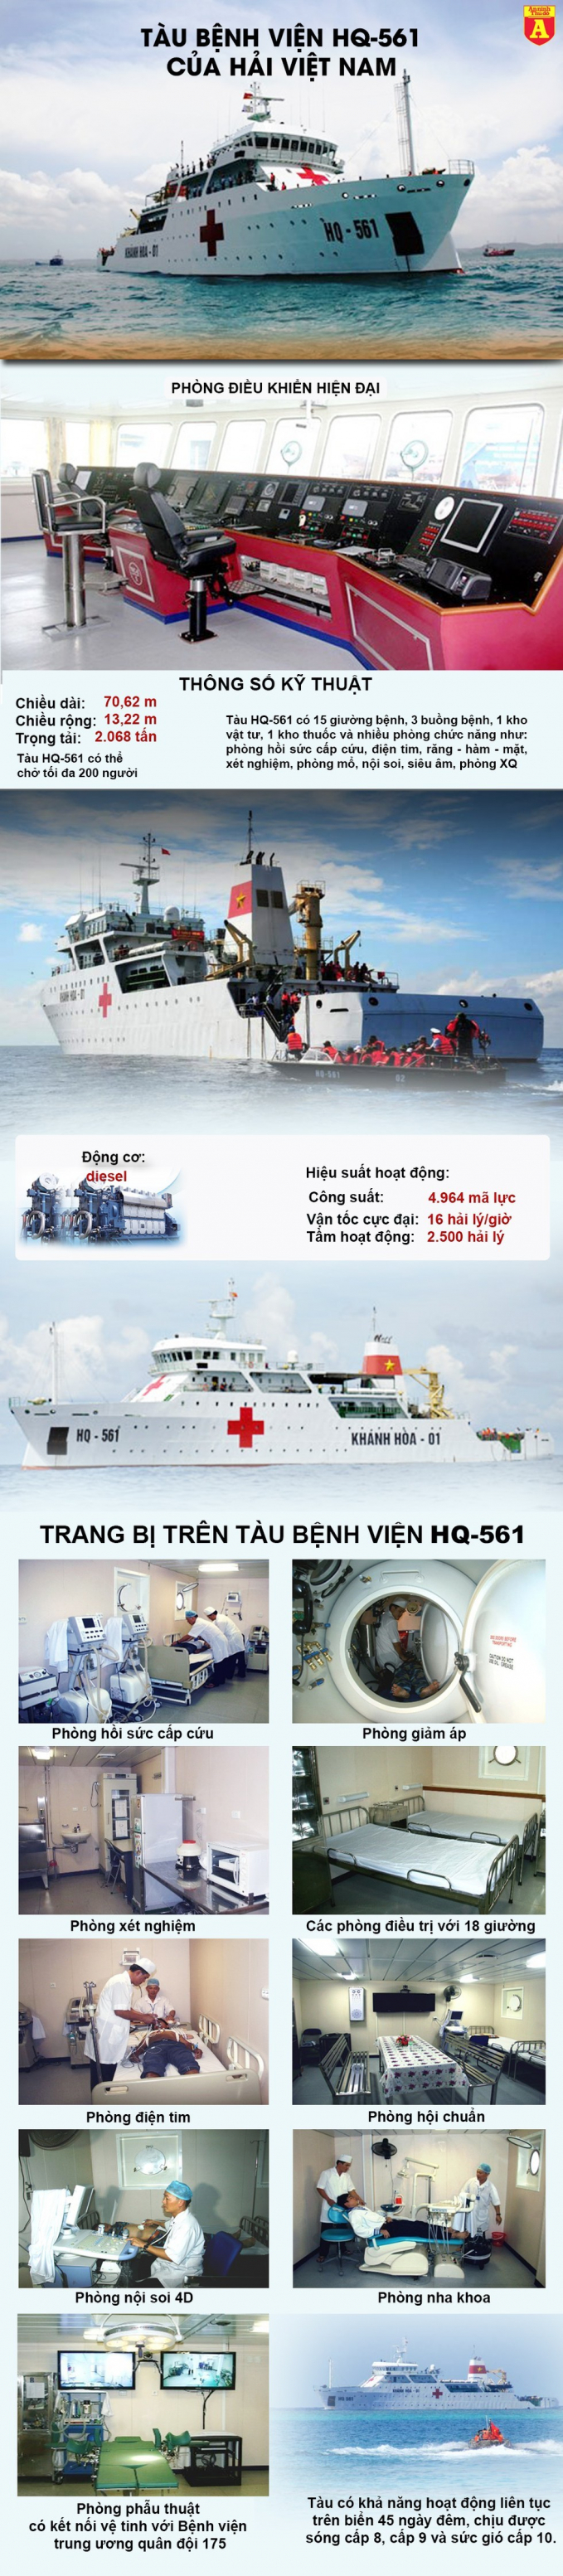 Việt Nam sở hữu tàu bệnh viện hiện đại nhất Đông Nam Á